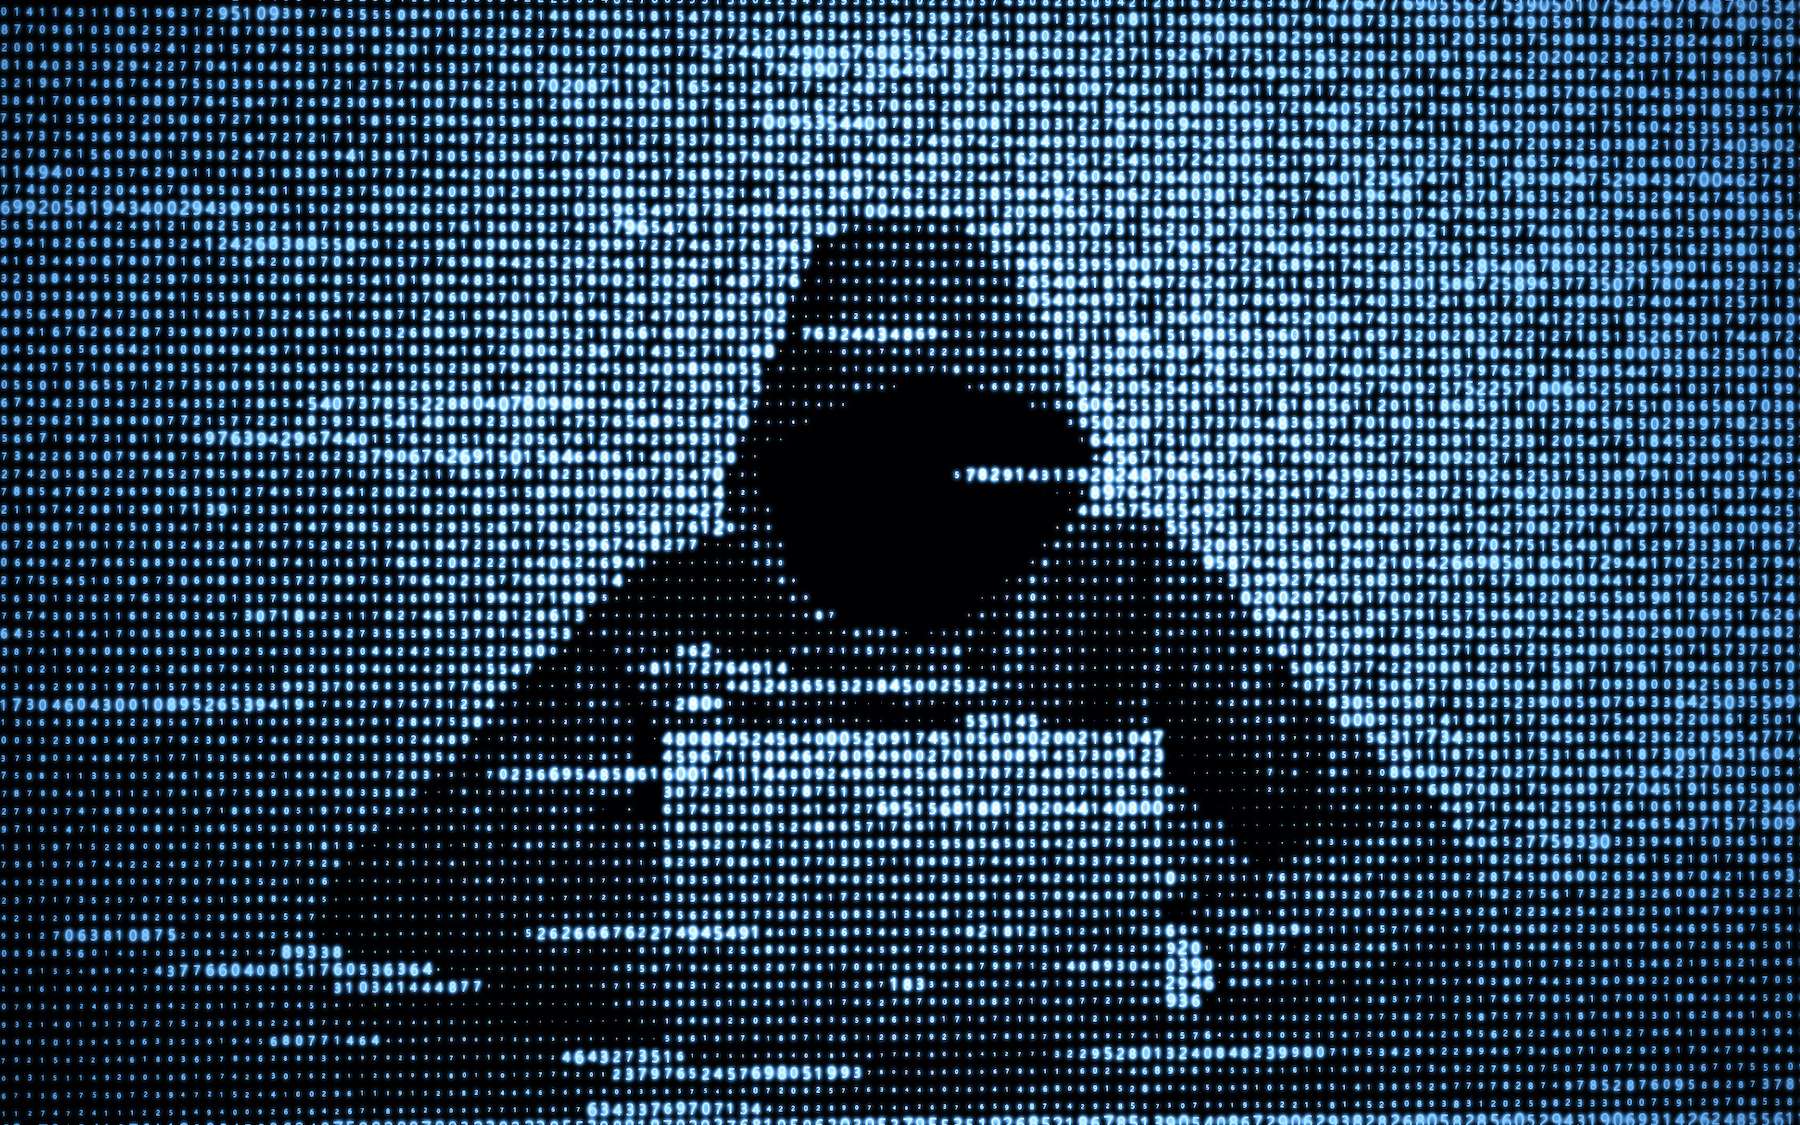 ما هو أكثر أنواع الهجمات الإلكترونية شيوعًا؟